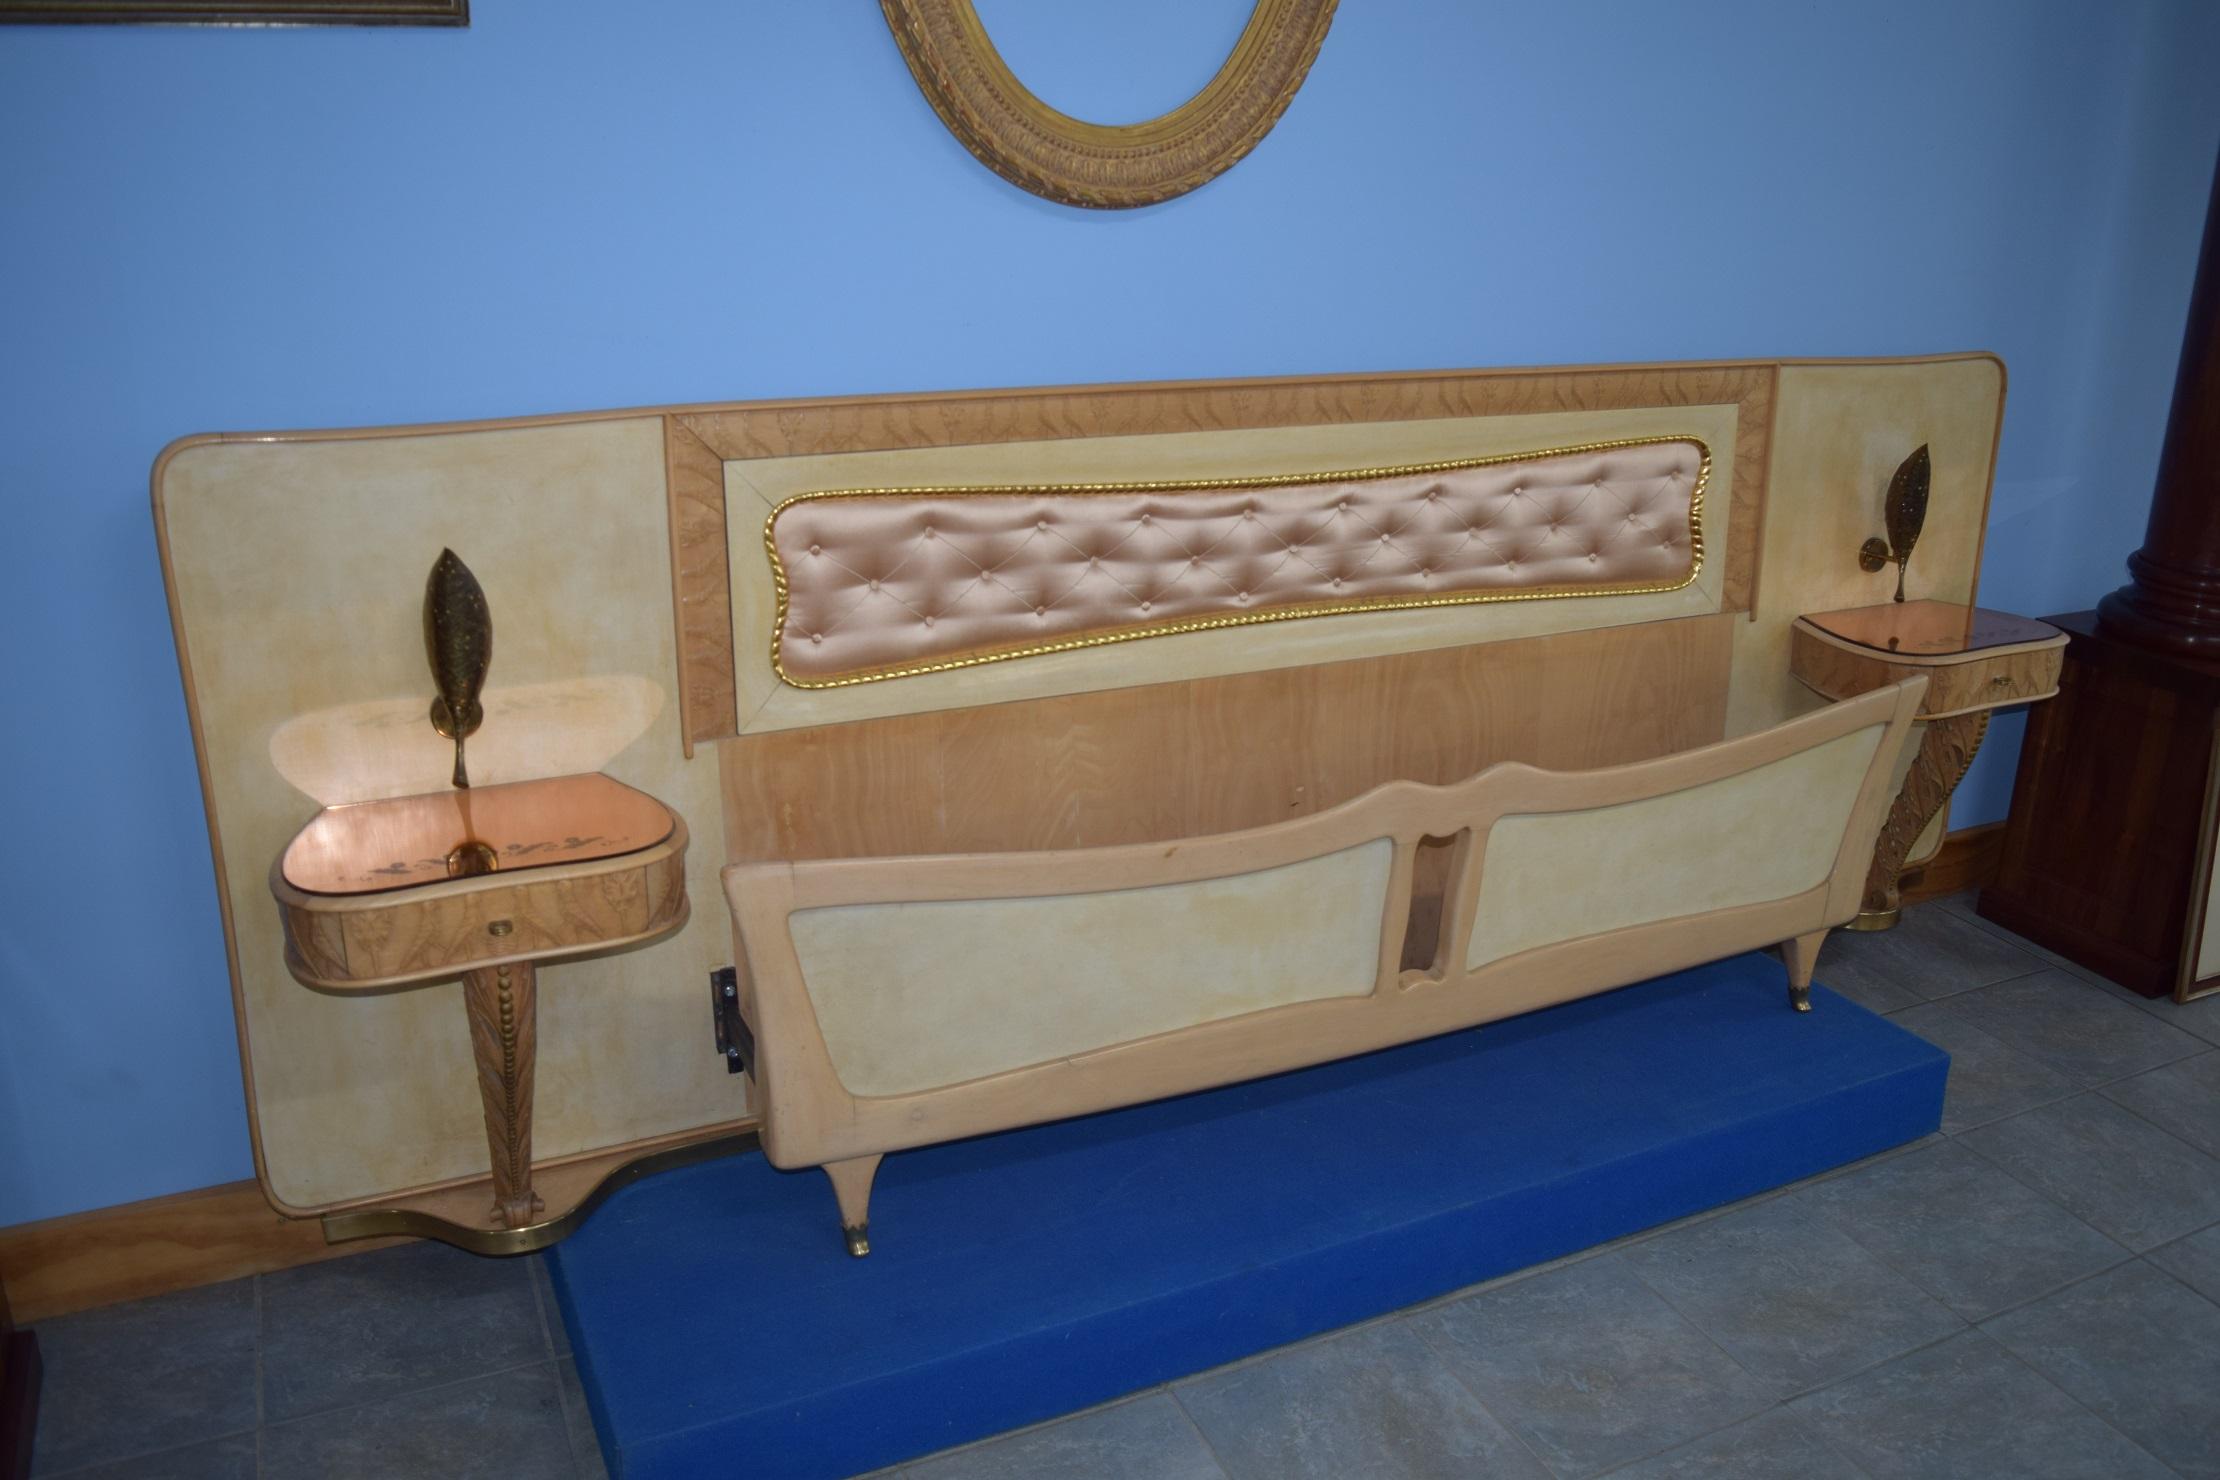 Il s'agit d'un superbe lit avec tables de chevet intégrées, conçu par Pierluigi Colli et fabriqué à Turin dans la première moitié des années 1900. L'attention portée aux détails est remarquable, avec une pléthore de caractéristiques exquises qui